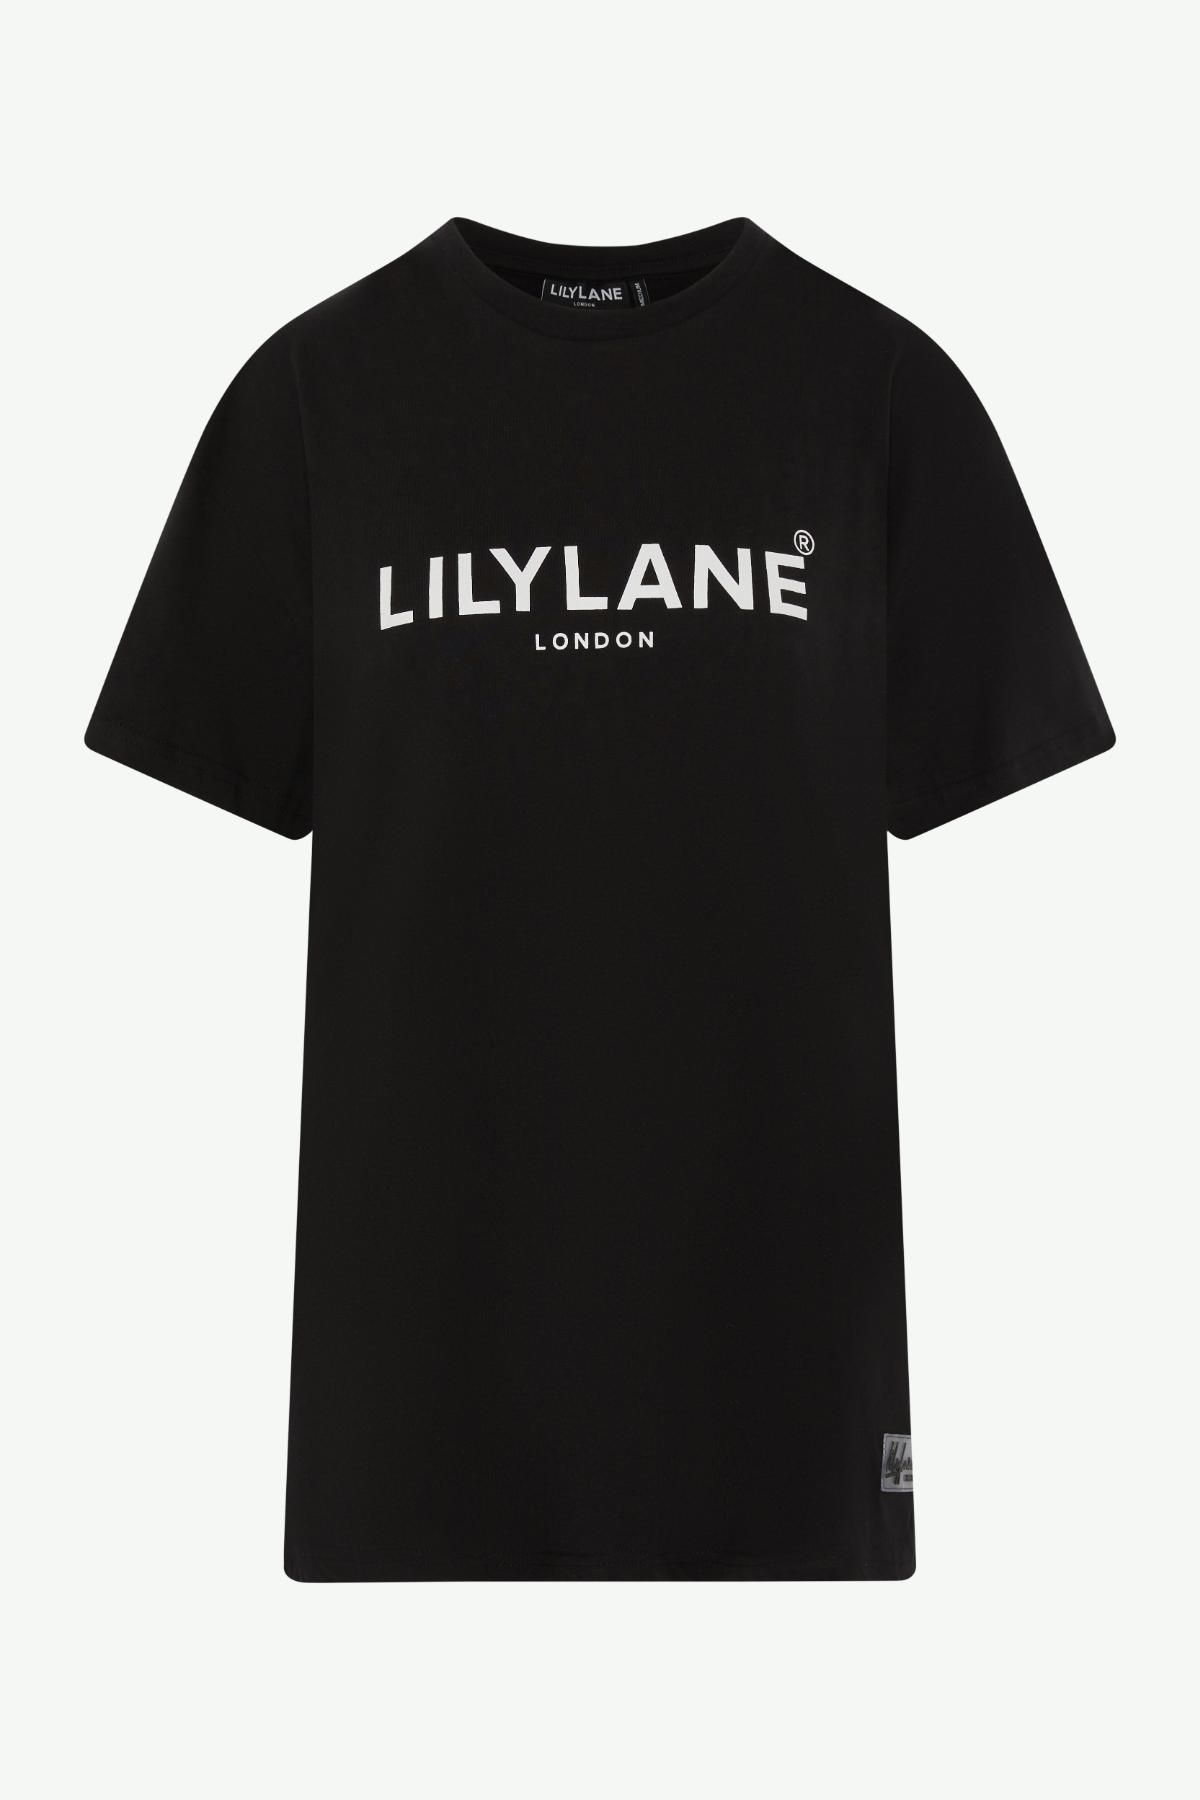 Lily Lane Womens Cotton T-shirt Black